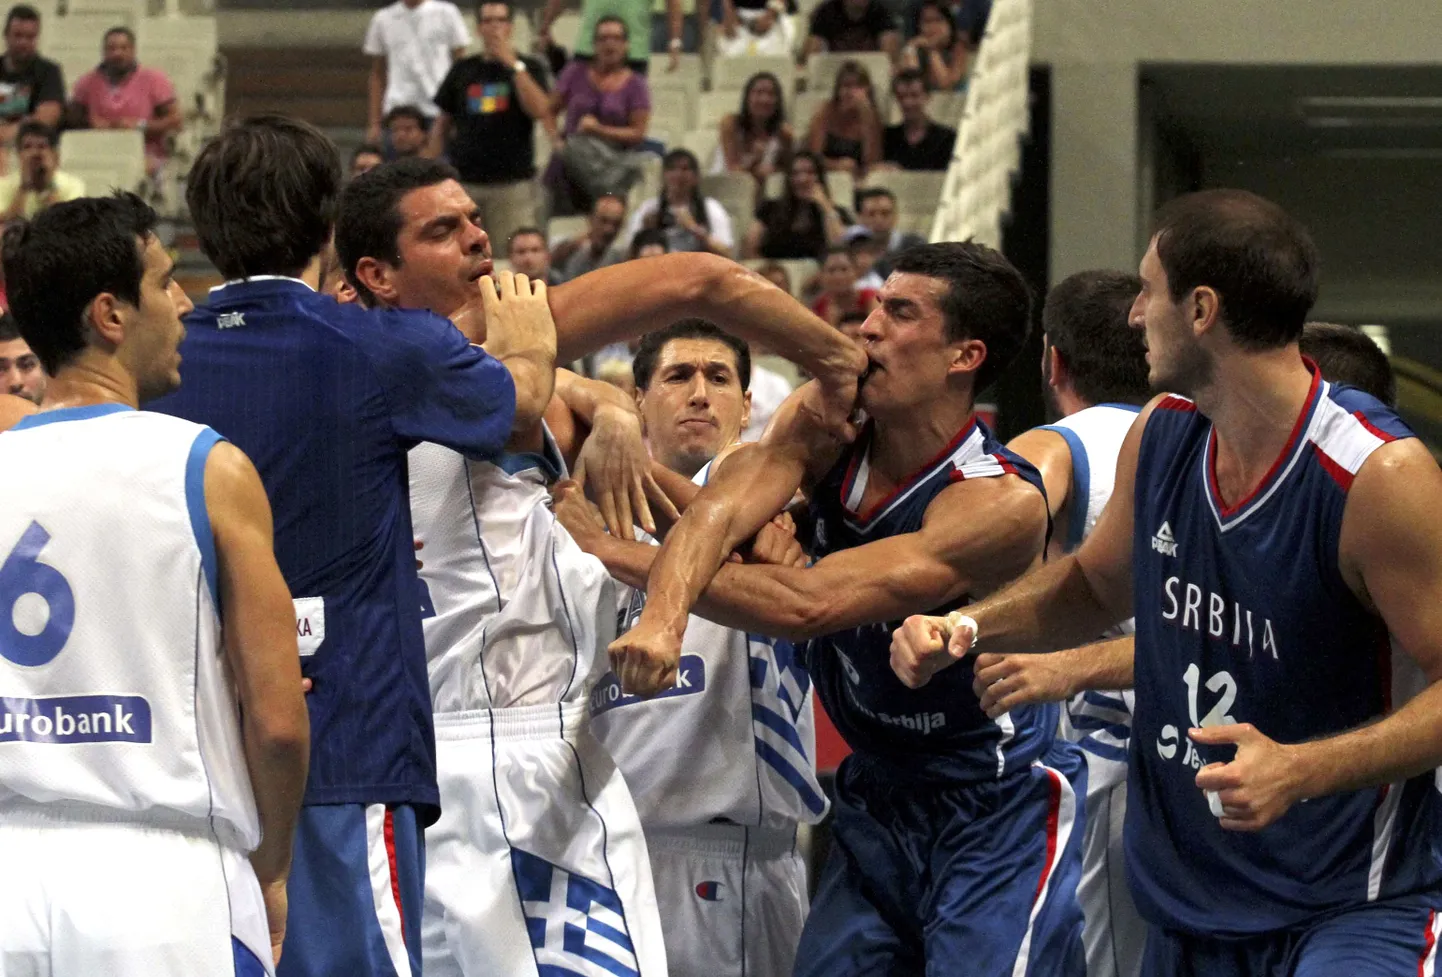 Kreeka ja Serbia korvpallikoondised klaarisid omavahel asju rusikatega.